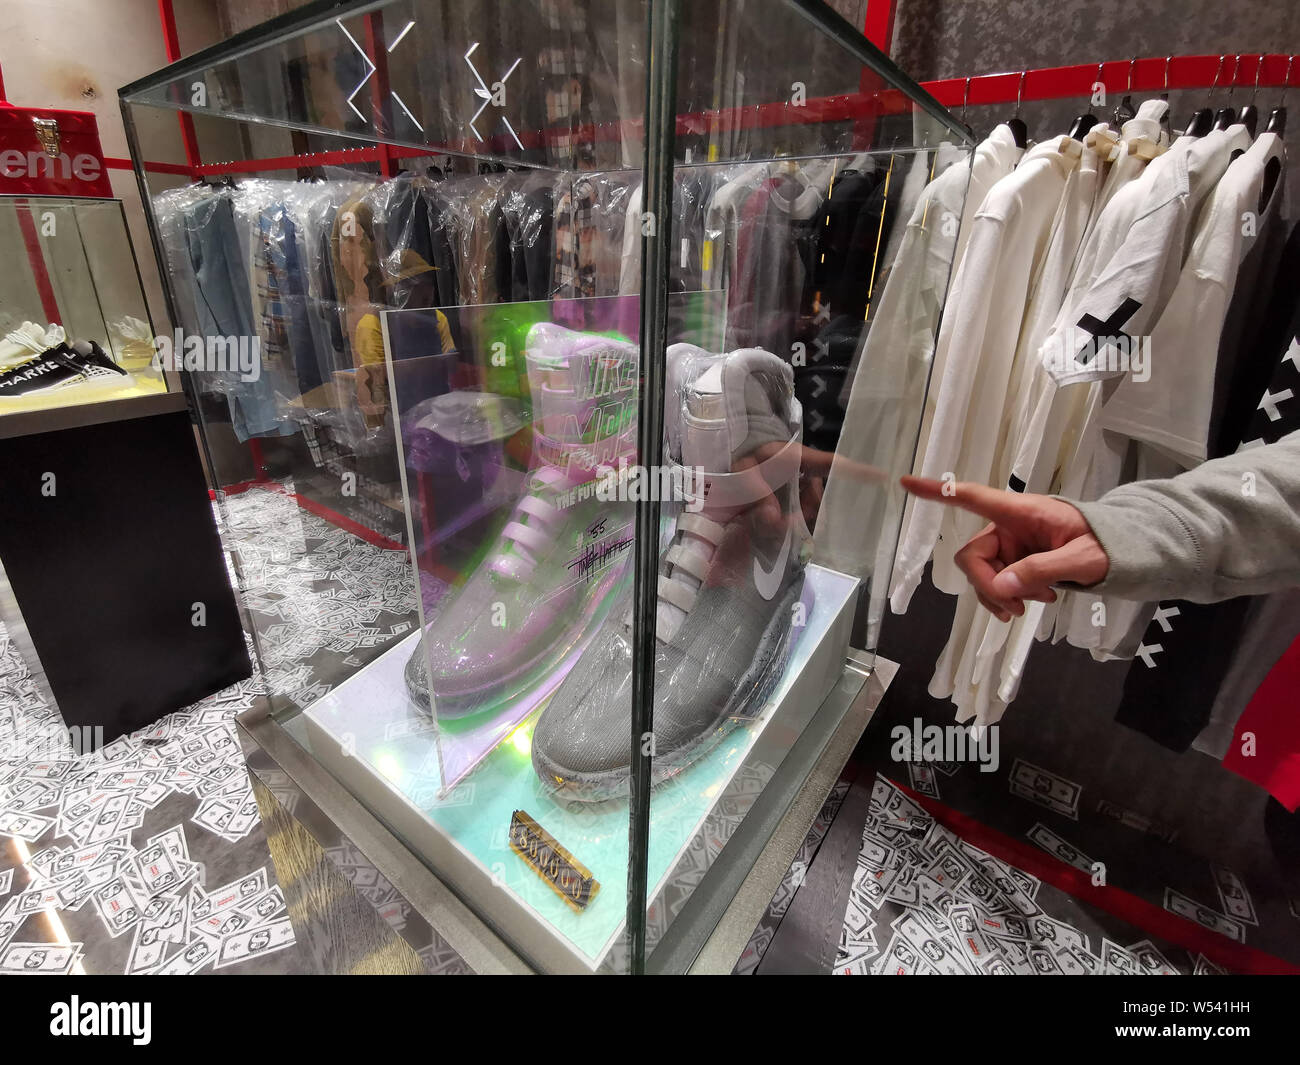 Un par de zapatillas Nike edición limitada del auto-lacing 'Regreso al  Futuro' zapatos aparece en una tienda en la ciudad de Wuhan, provincia de  Hubei en China central, 13 Janu Fotografía de